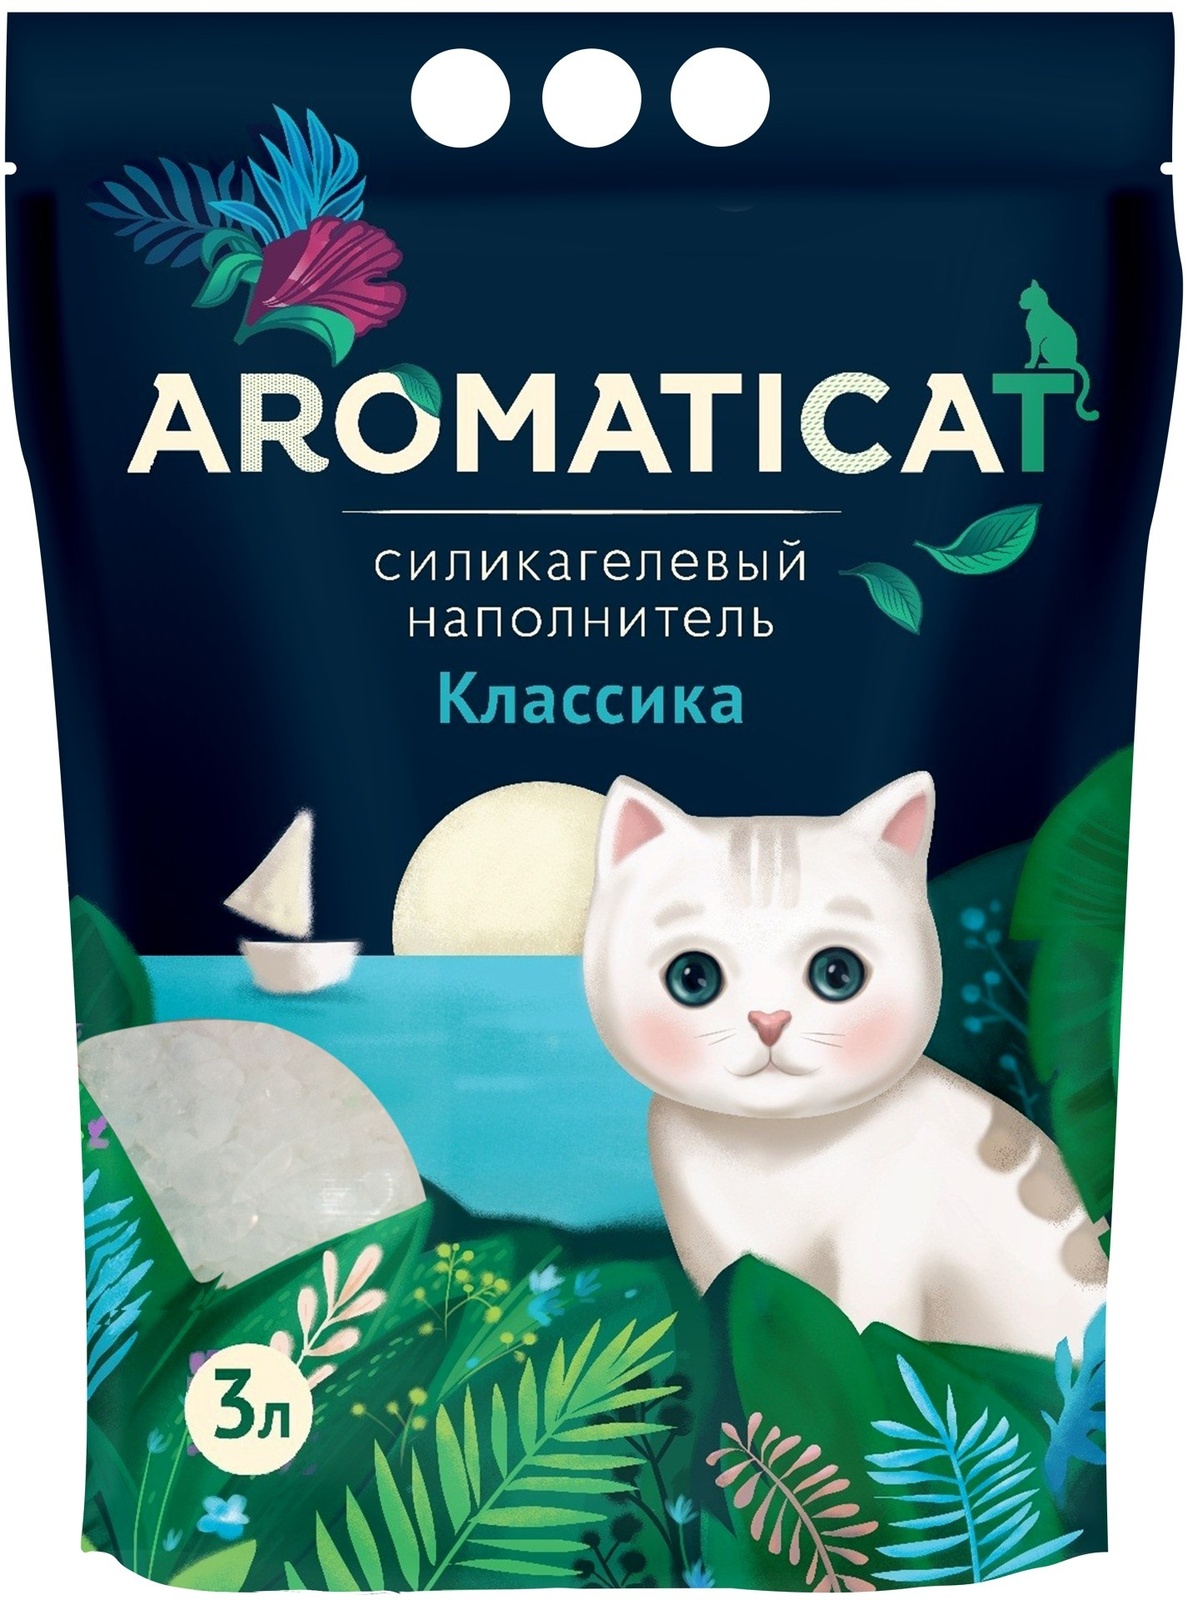 AromatiCat AromatiCat силикагелевый наполнитель Классика (1,25 кг) aromaticat aromaticat силикагелевый наполнитель прованс 2 08 кг